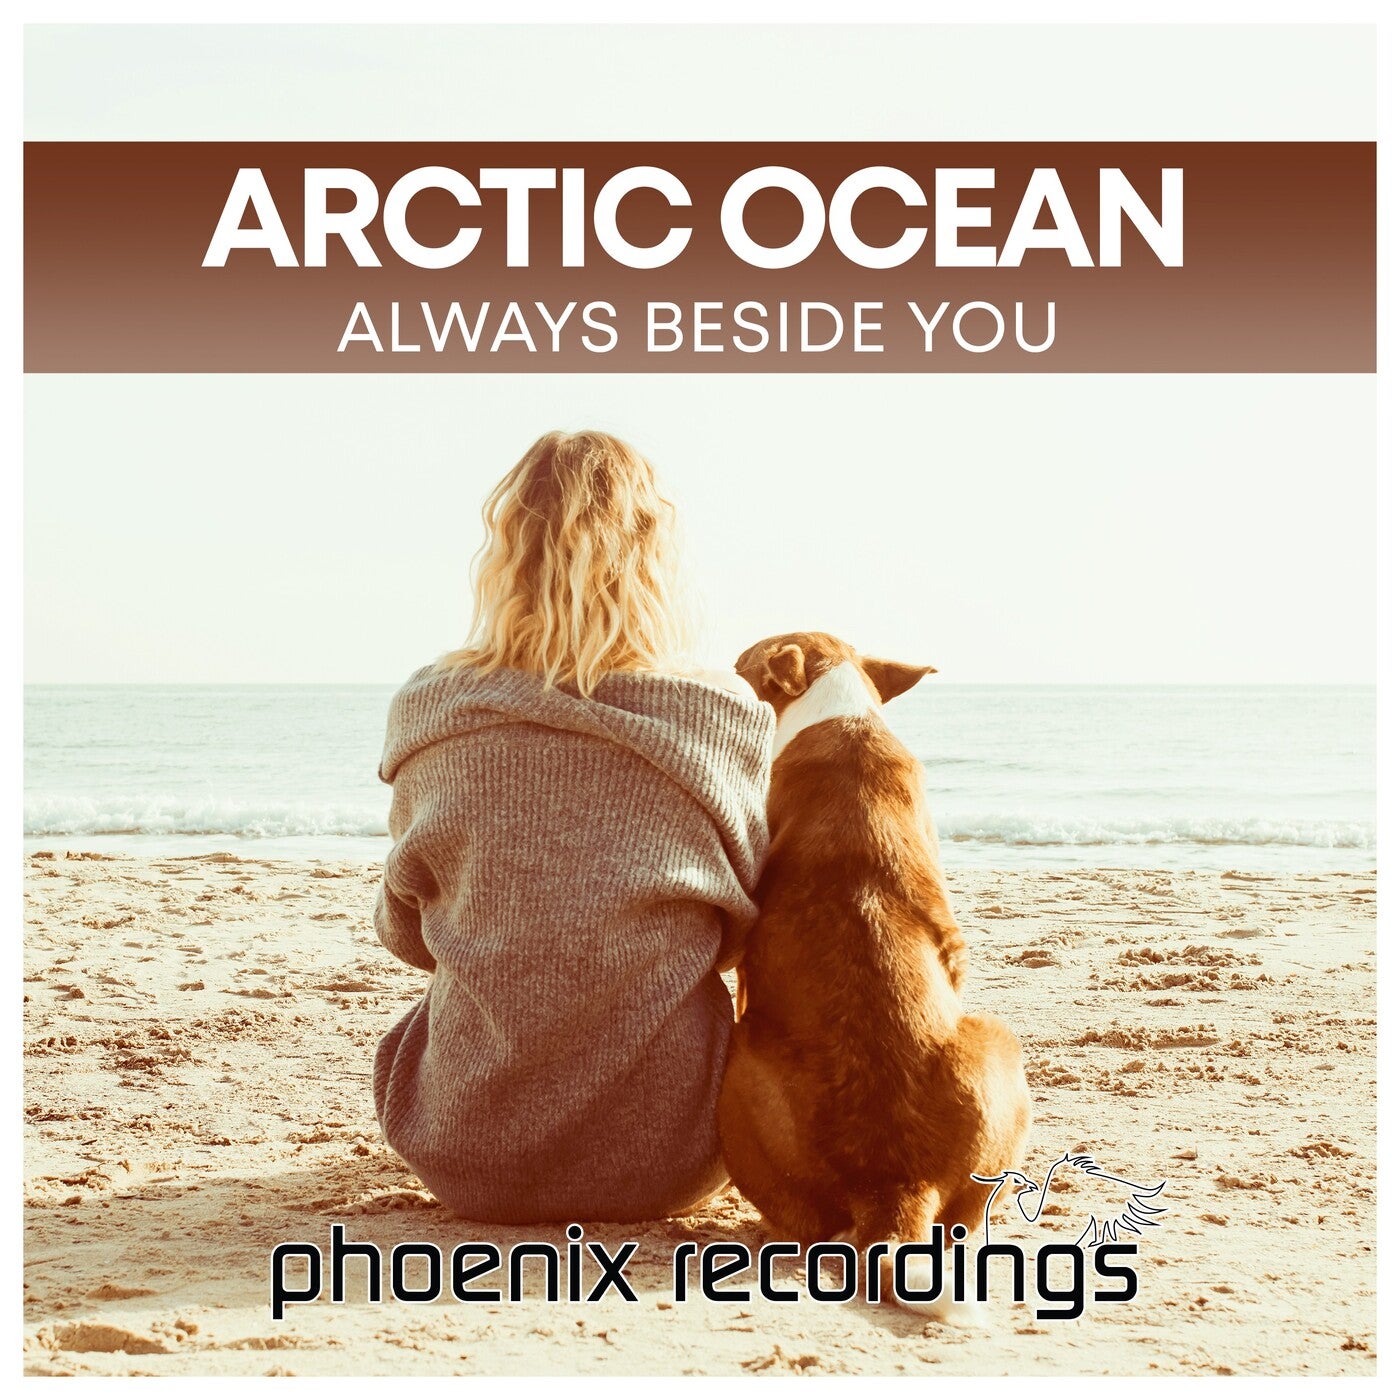 Arctic Ocean - Always Beside You [Phoenix Recordings]